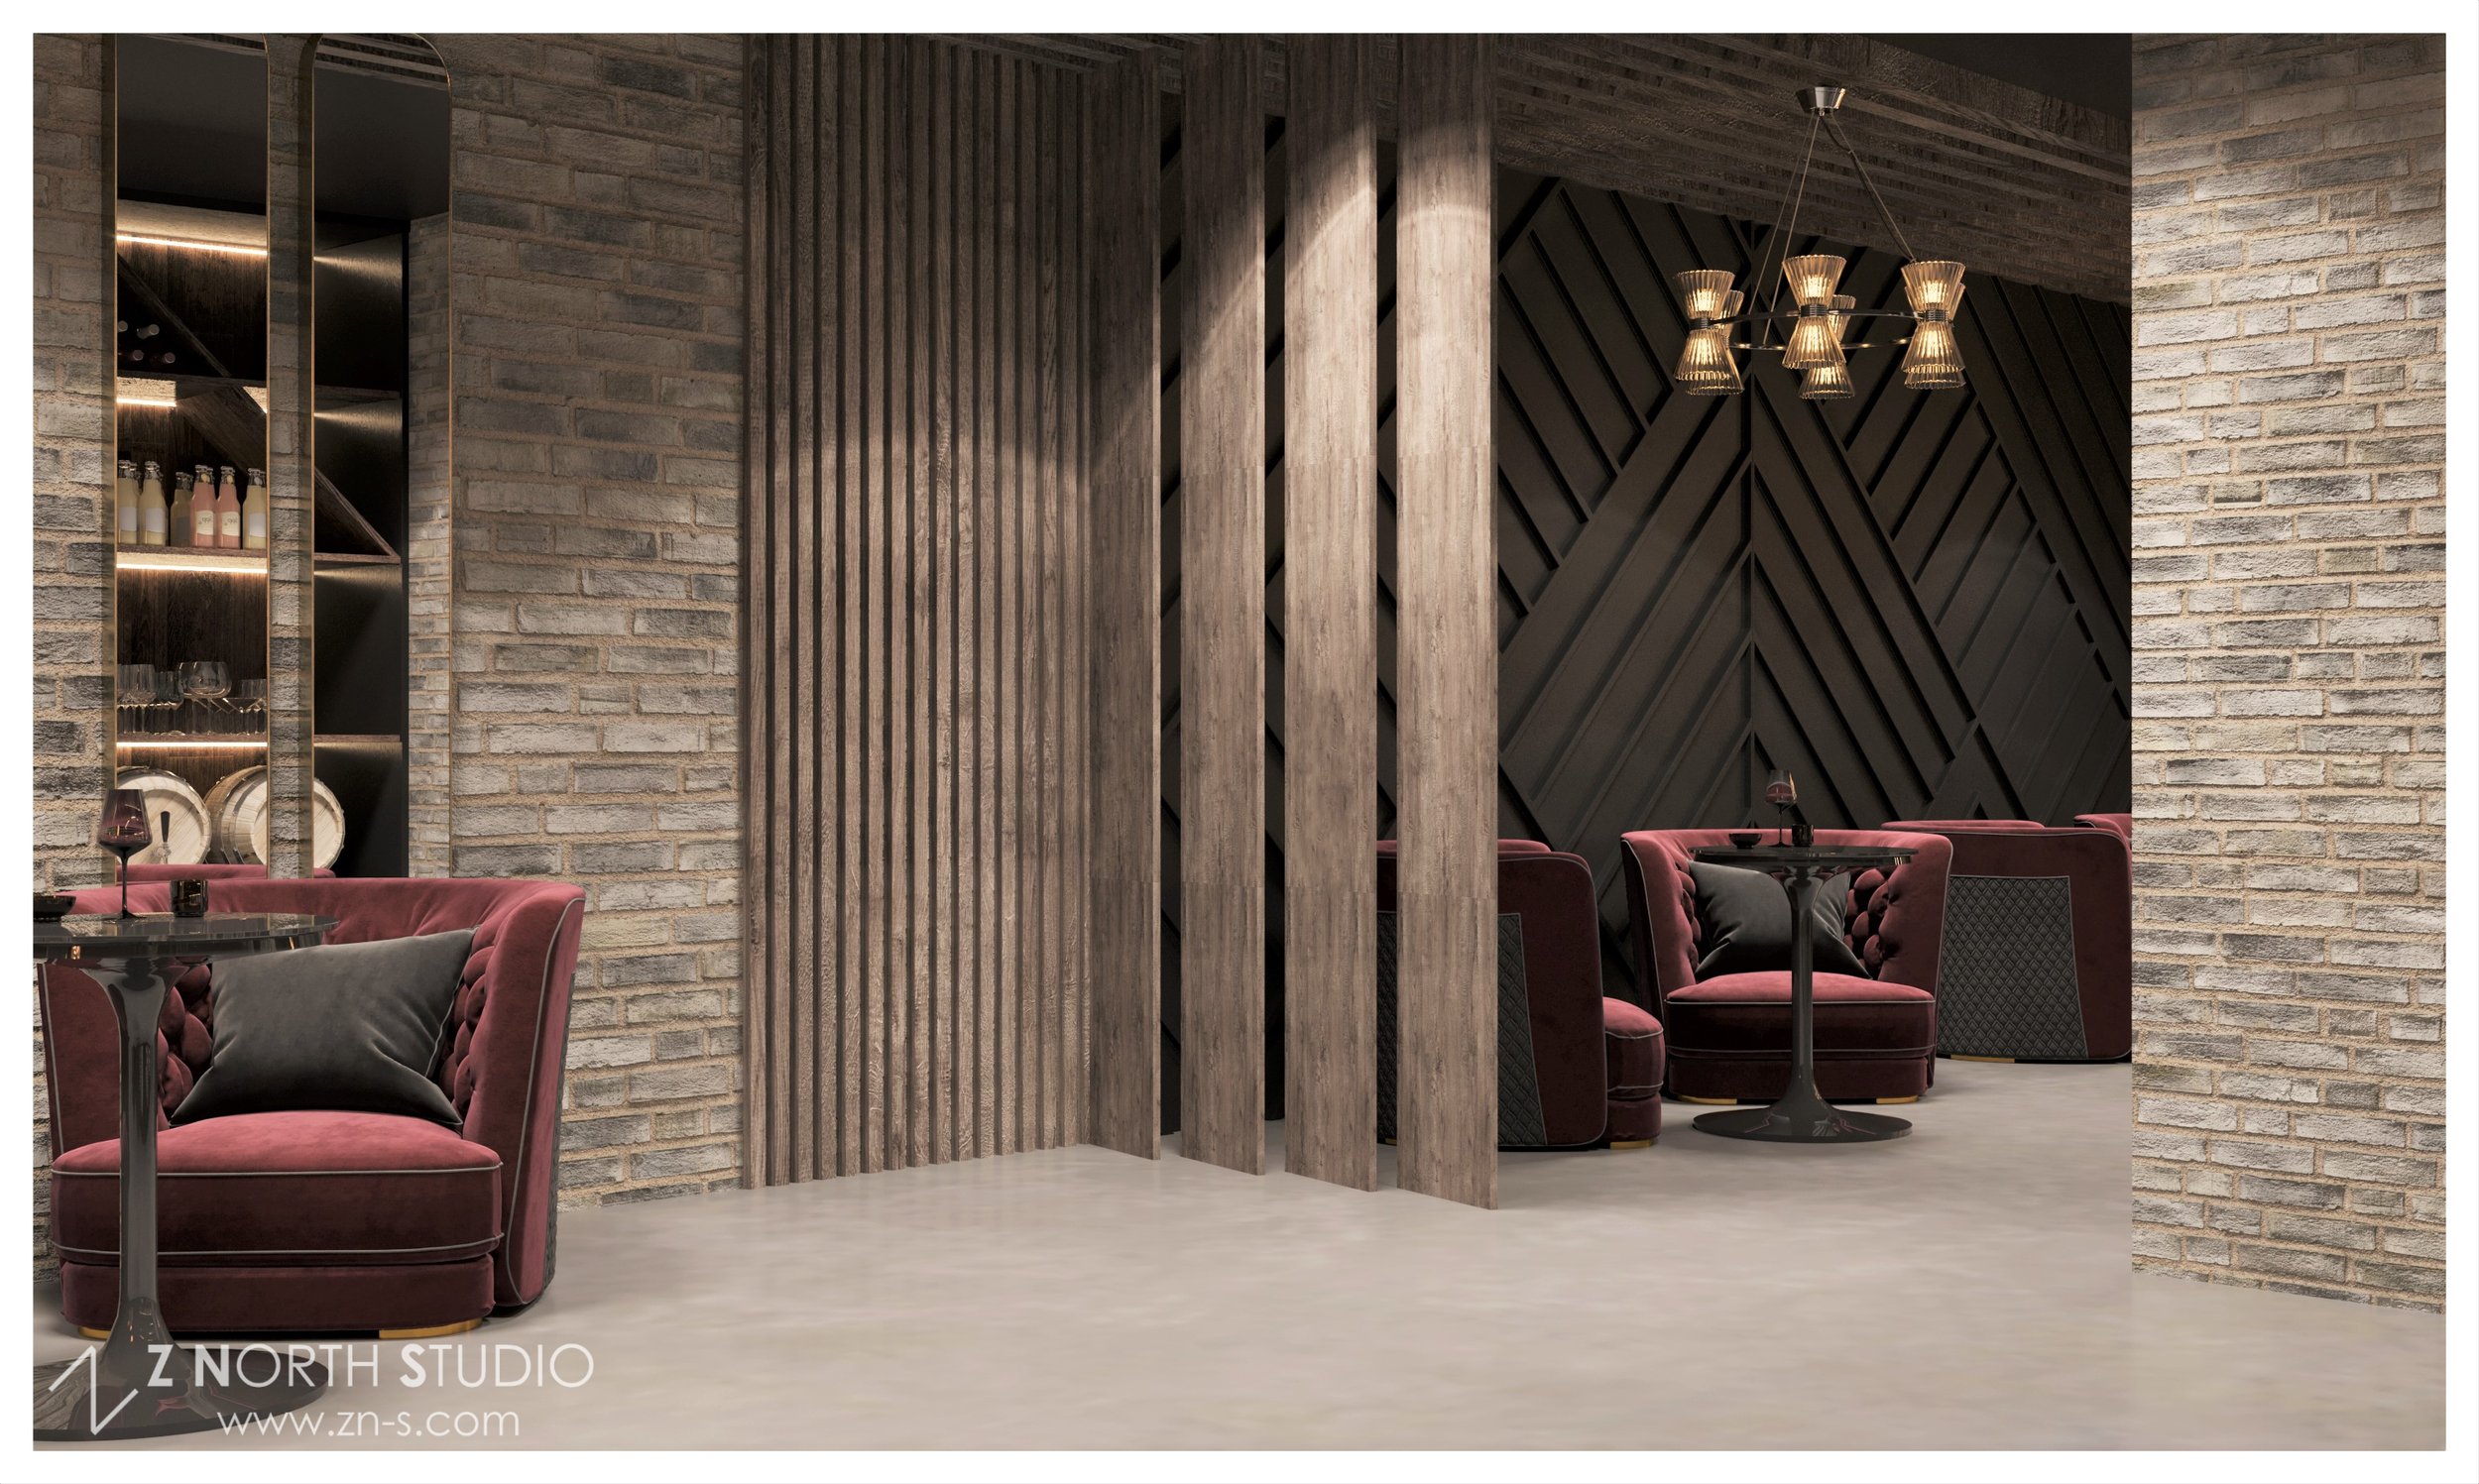 _Flavio Restaurant Design  Z North Studio  Speakeasy Design B (4).jpg